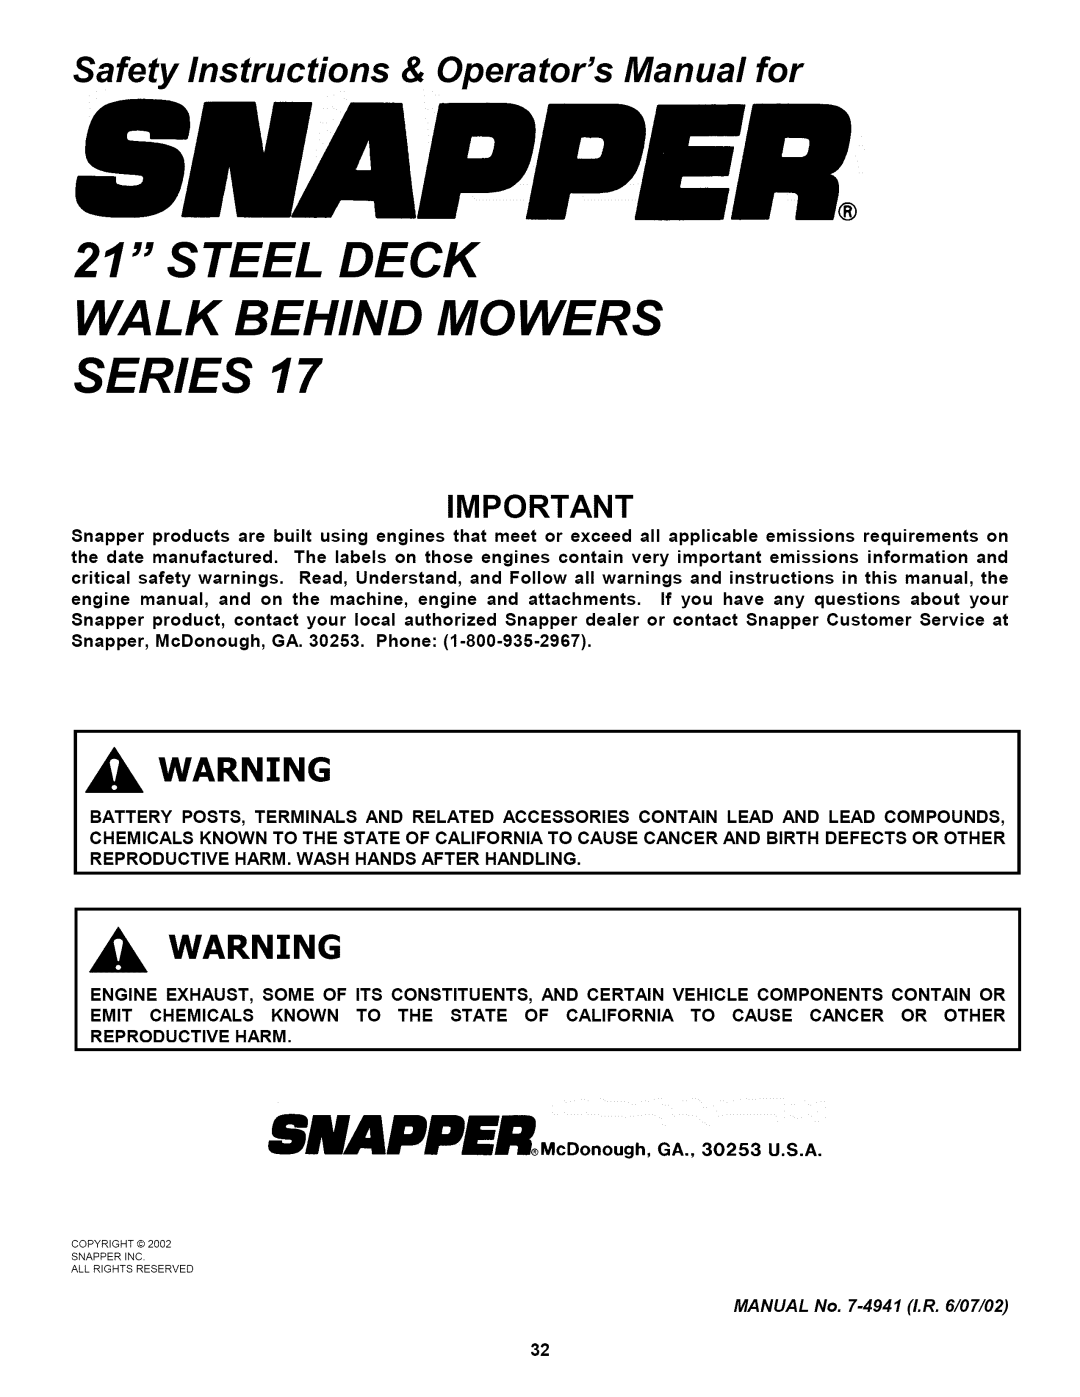 Snapper P2167517BVE, WP216517B Steel Deck Walk Behind Mowers Series, SMAPPER.coonough, _o_u_ 